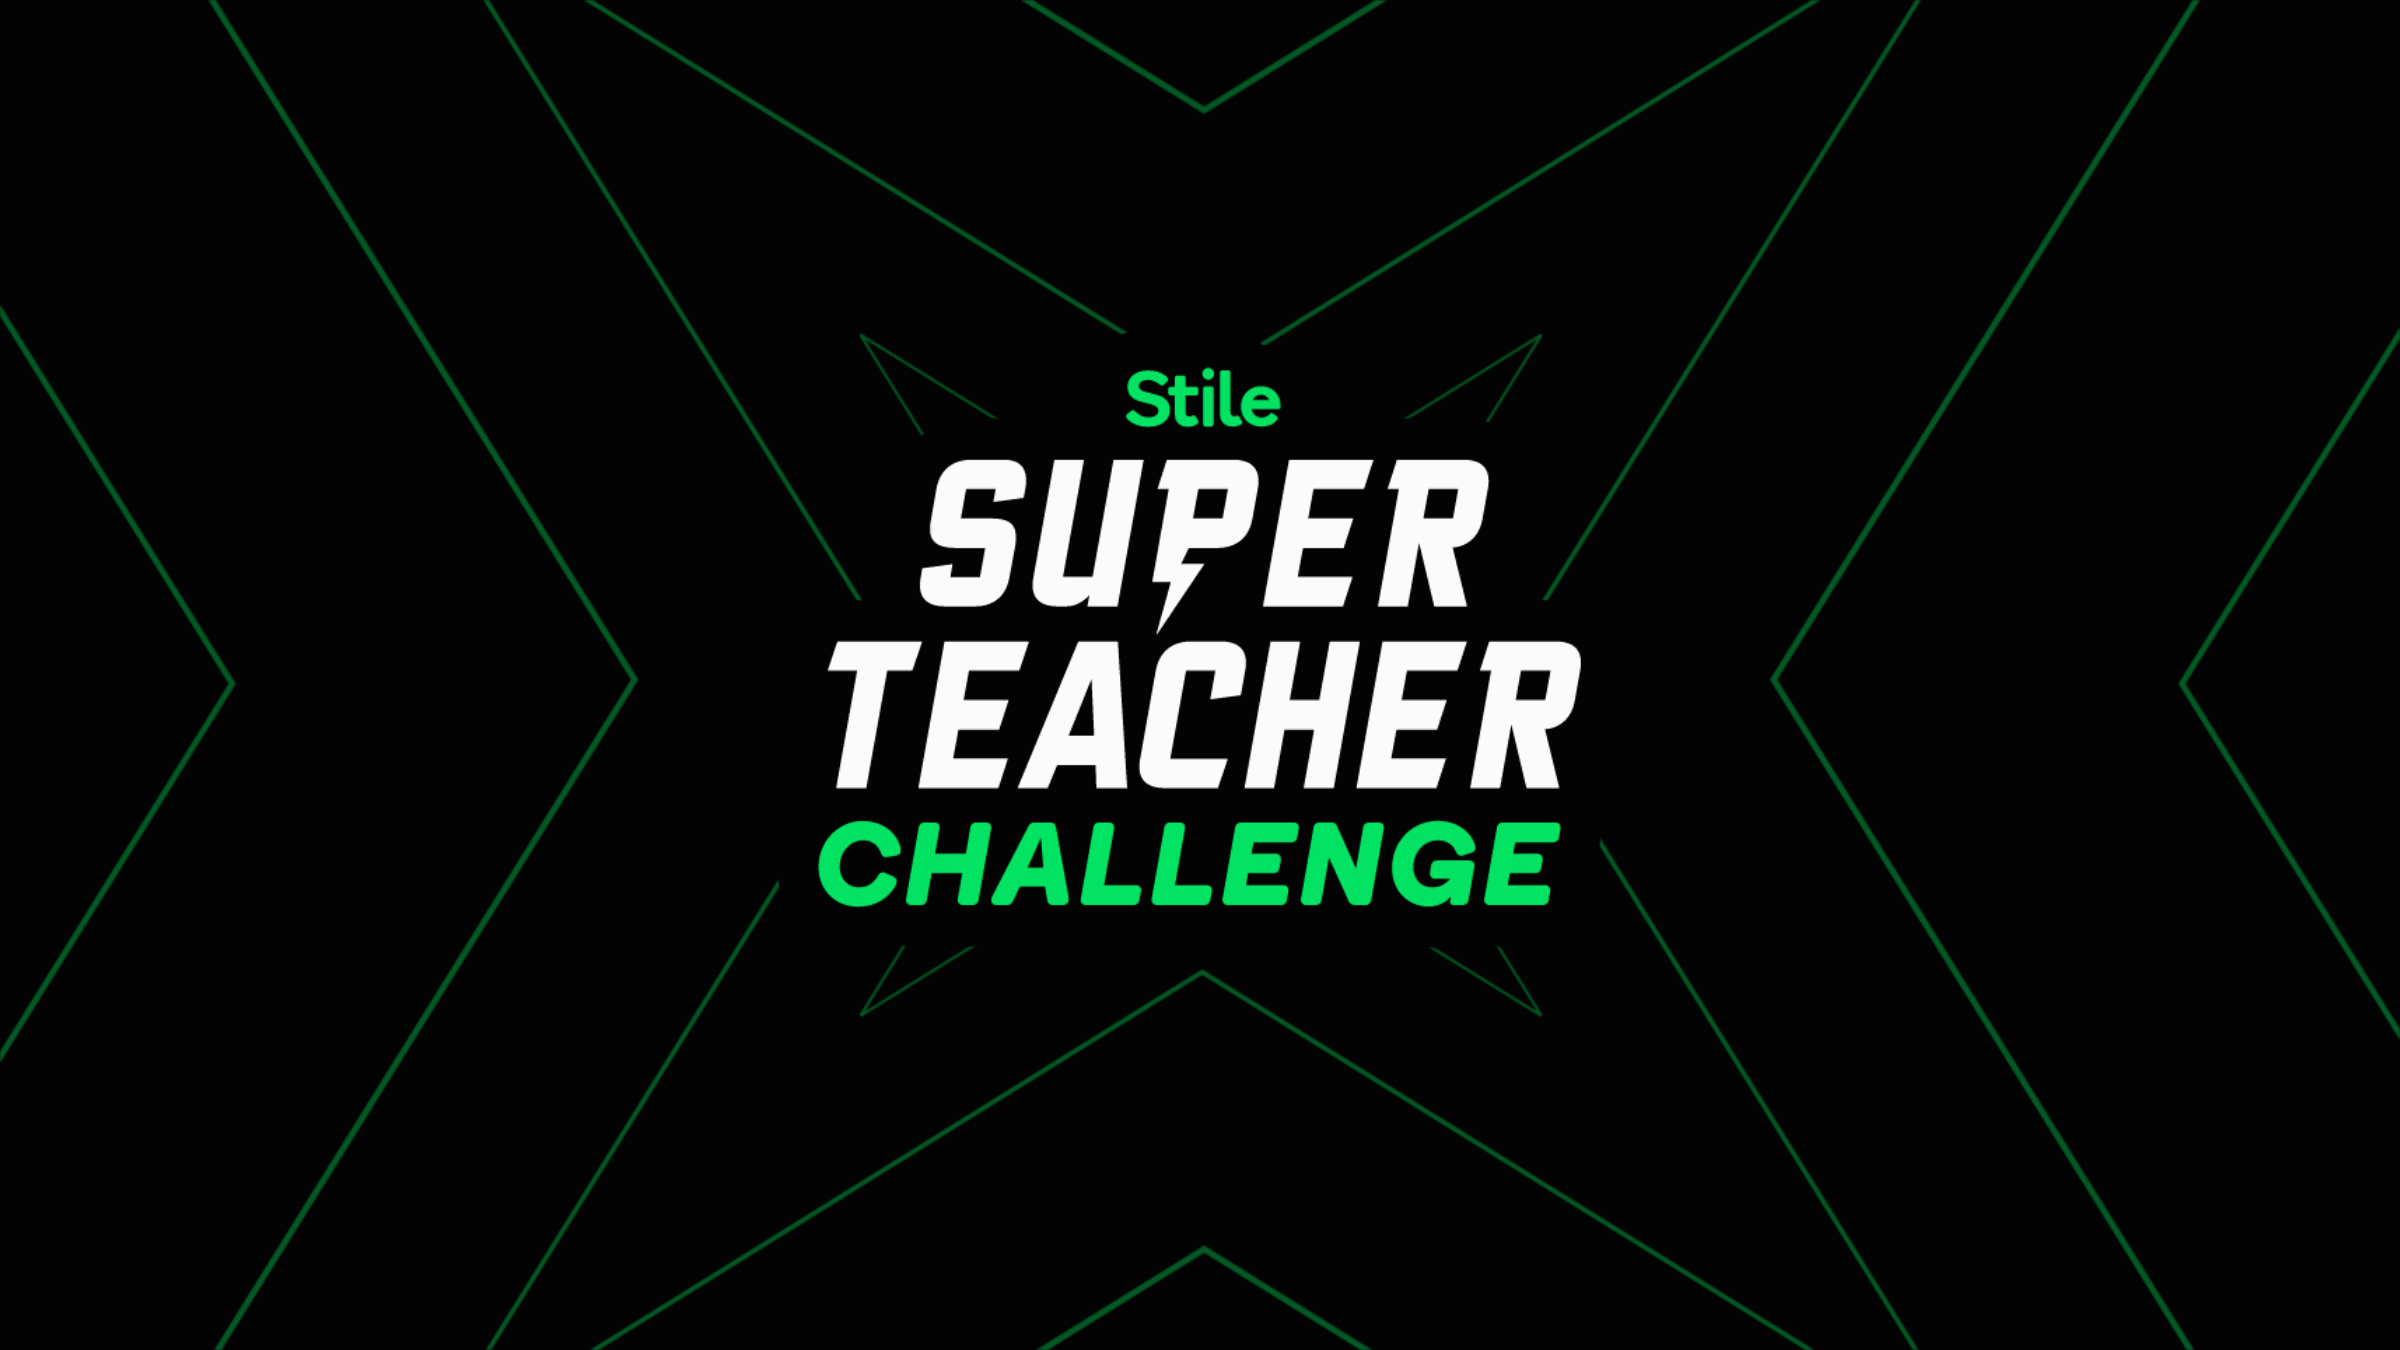 Stile Super Teacher Challenge 2021